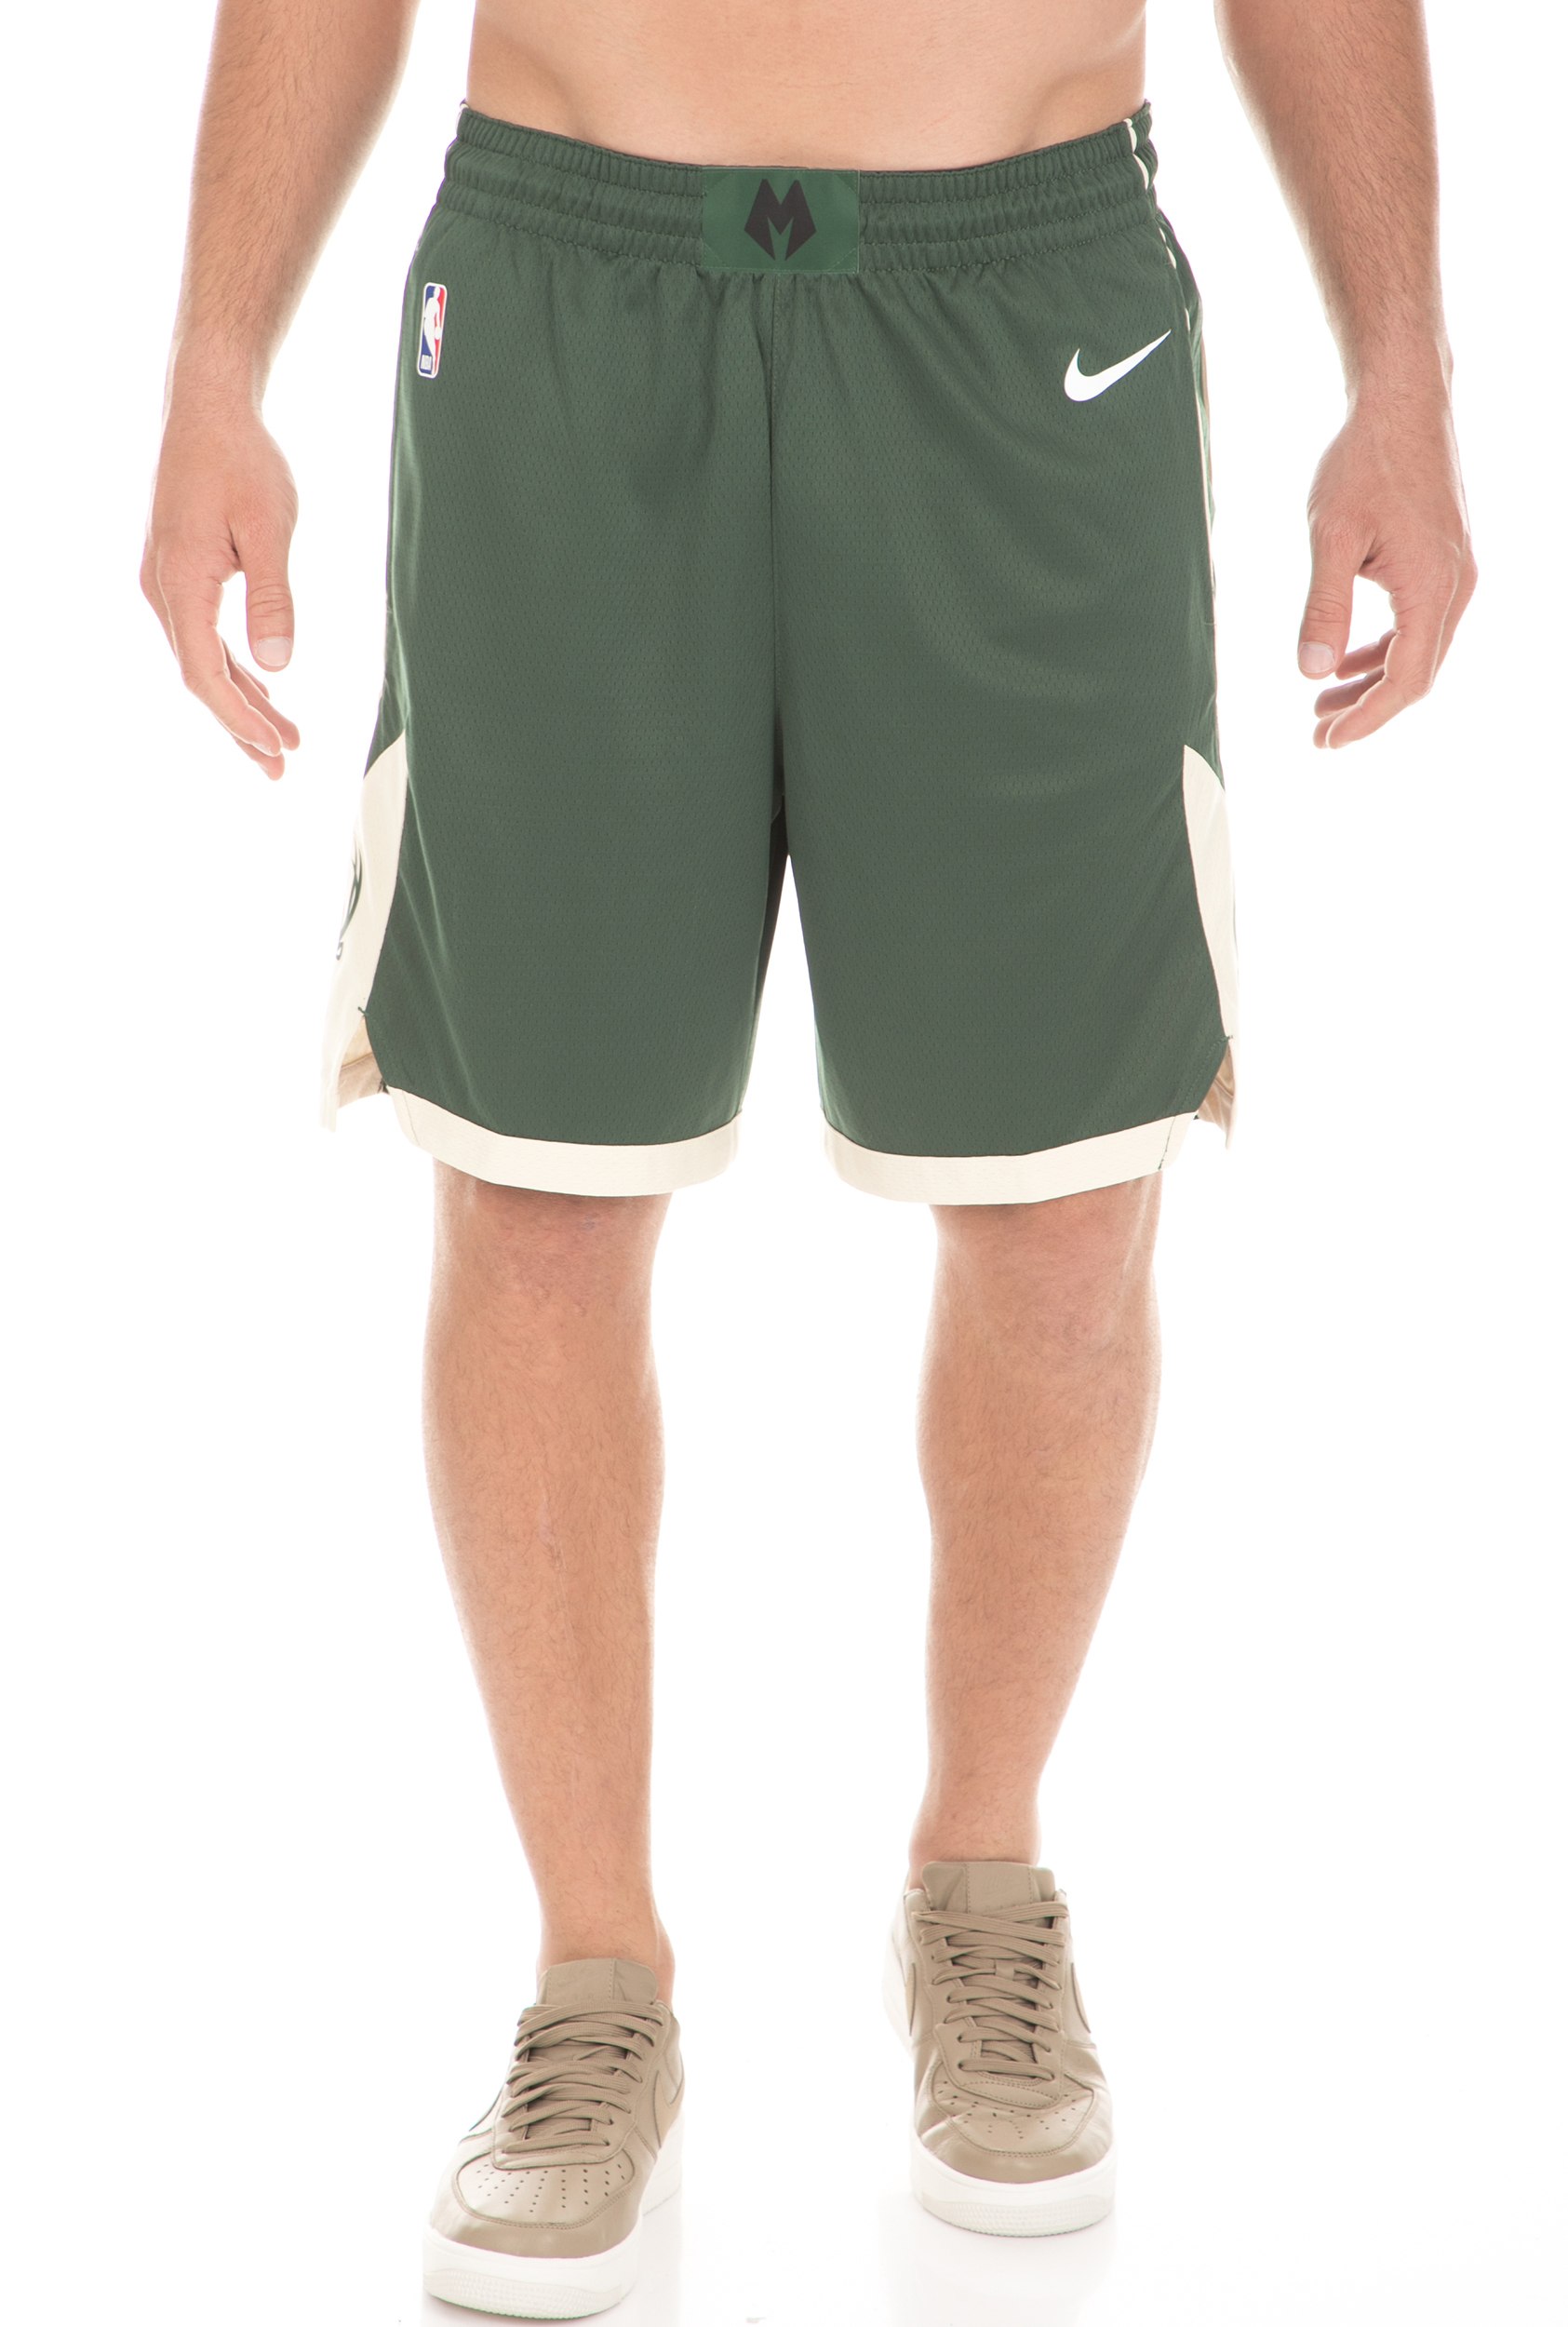 Ανδρικά/Ρούχα/Σορτς-Βερμούδες/Αθλητικά NIKE - Ανδρικό σορτς μπάσκετ Nike NBA Milwaukee Bucks Icon Edition Swingman πράσινο